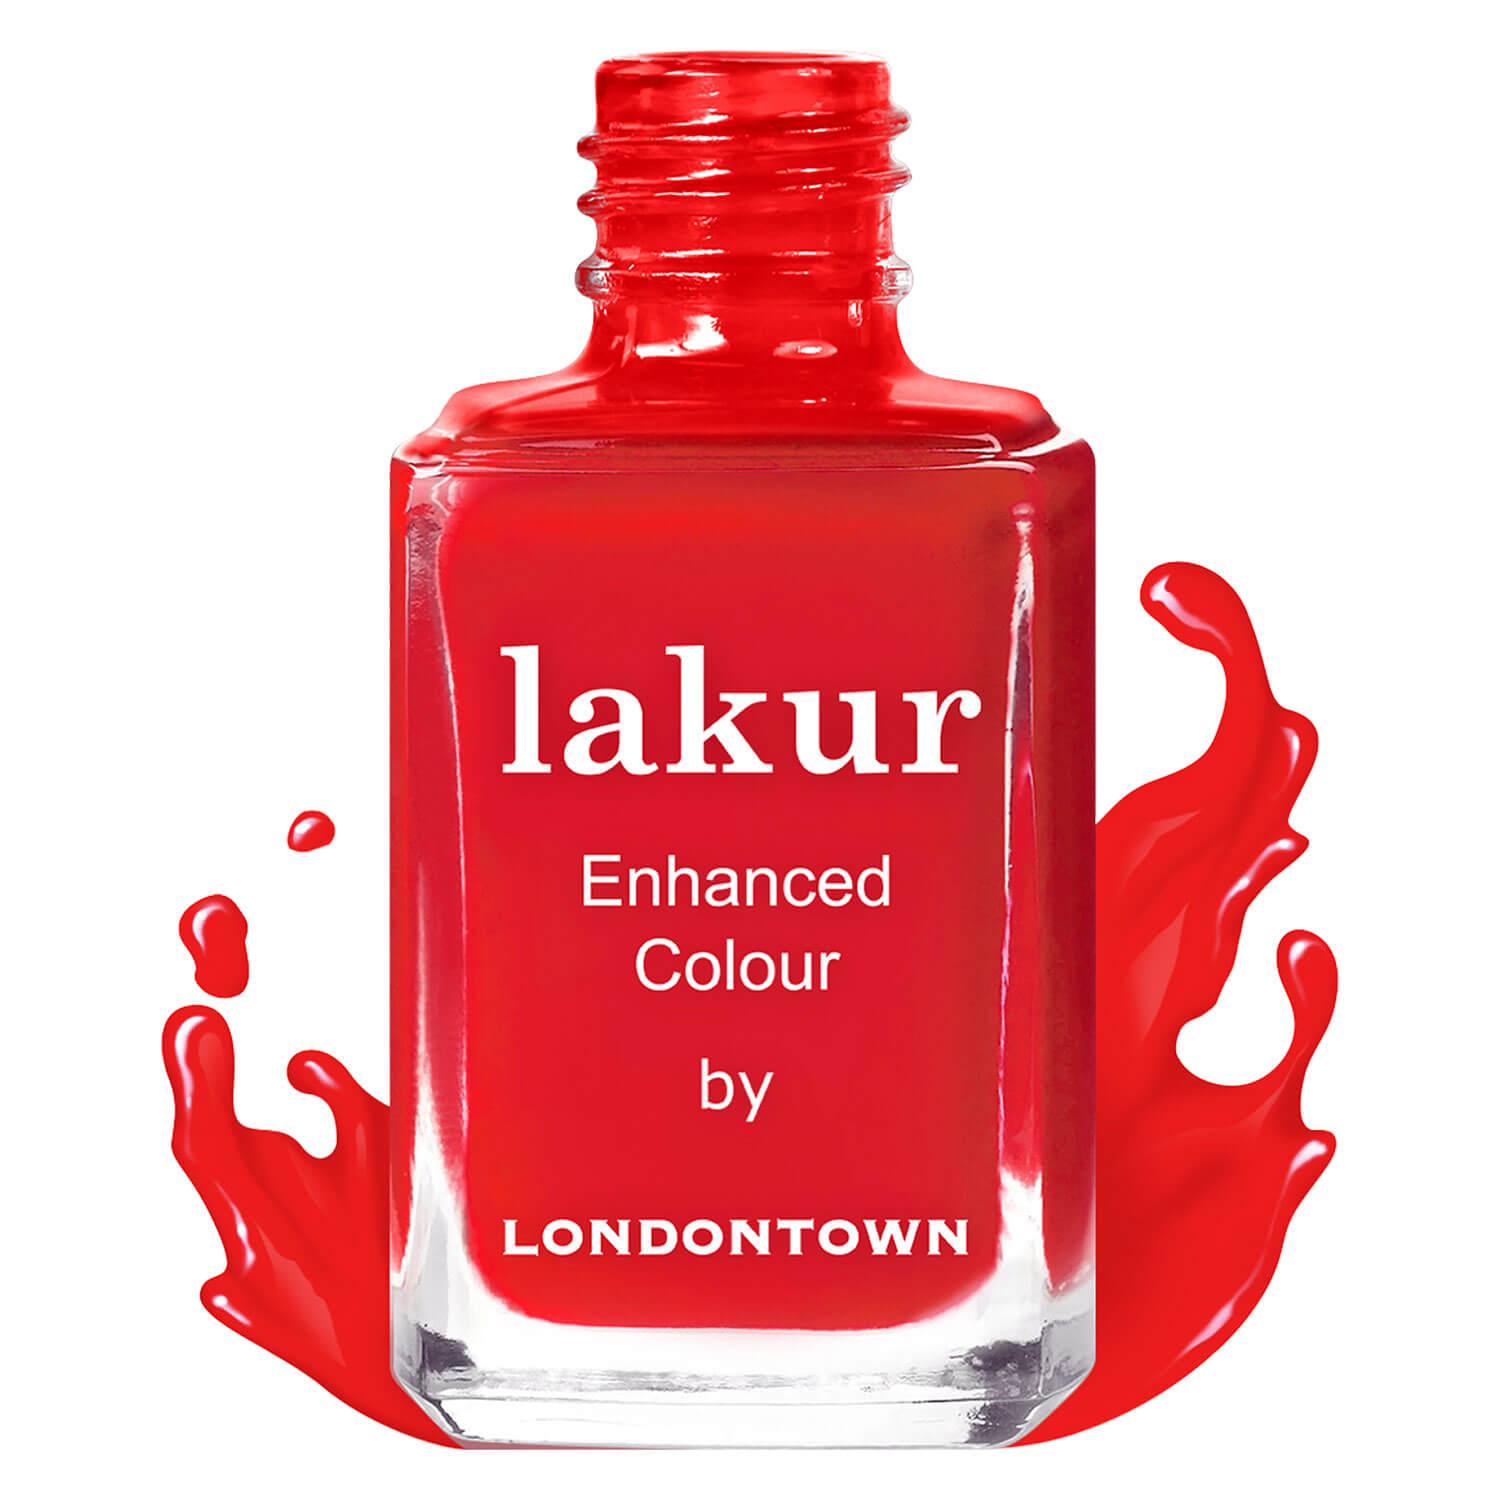 lakur - London Calling